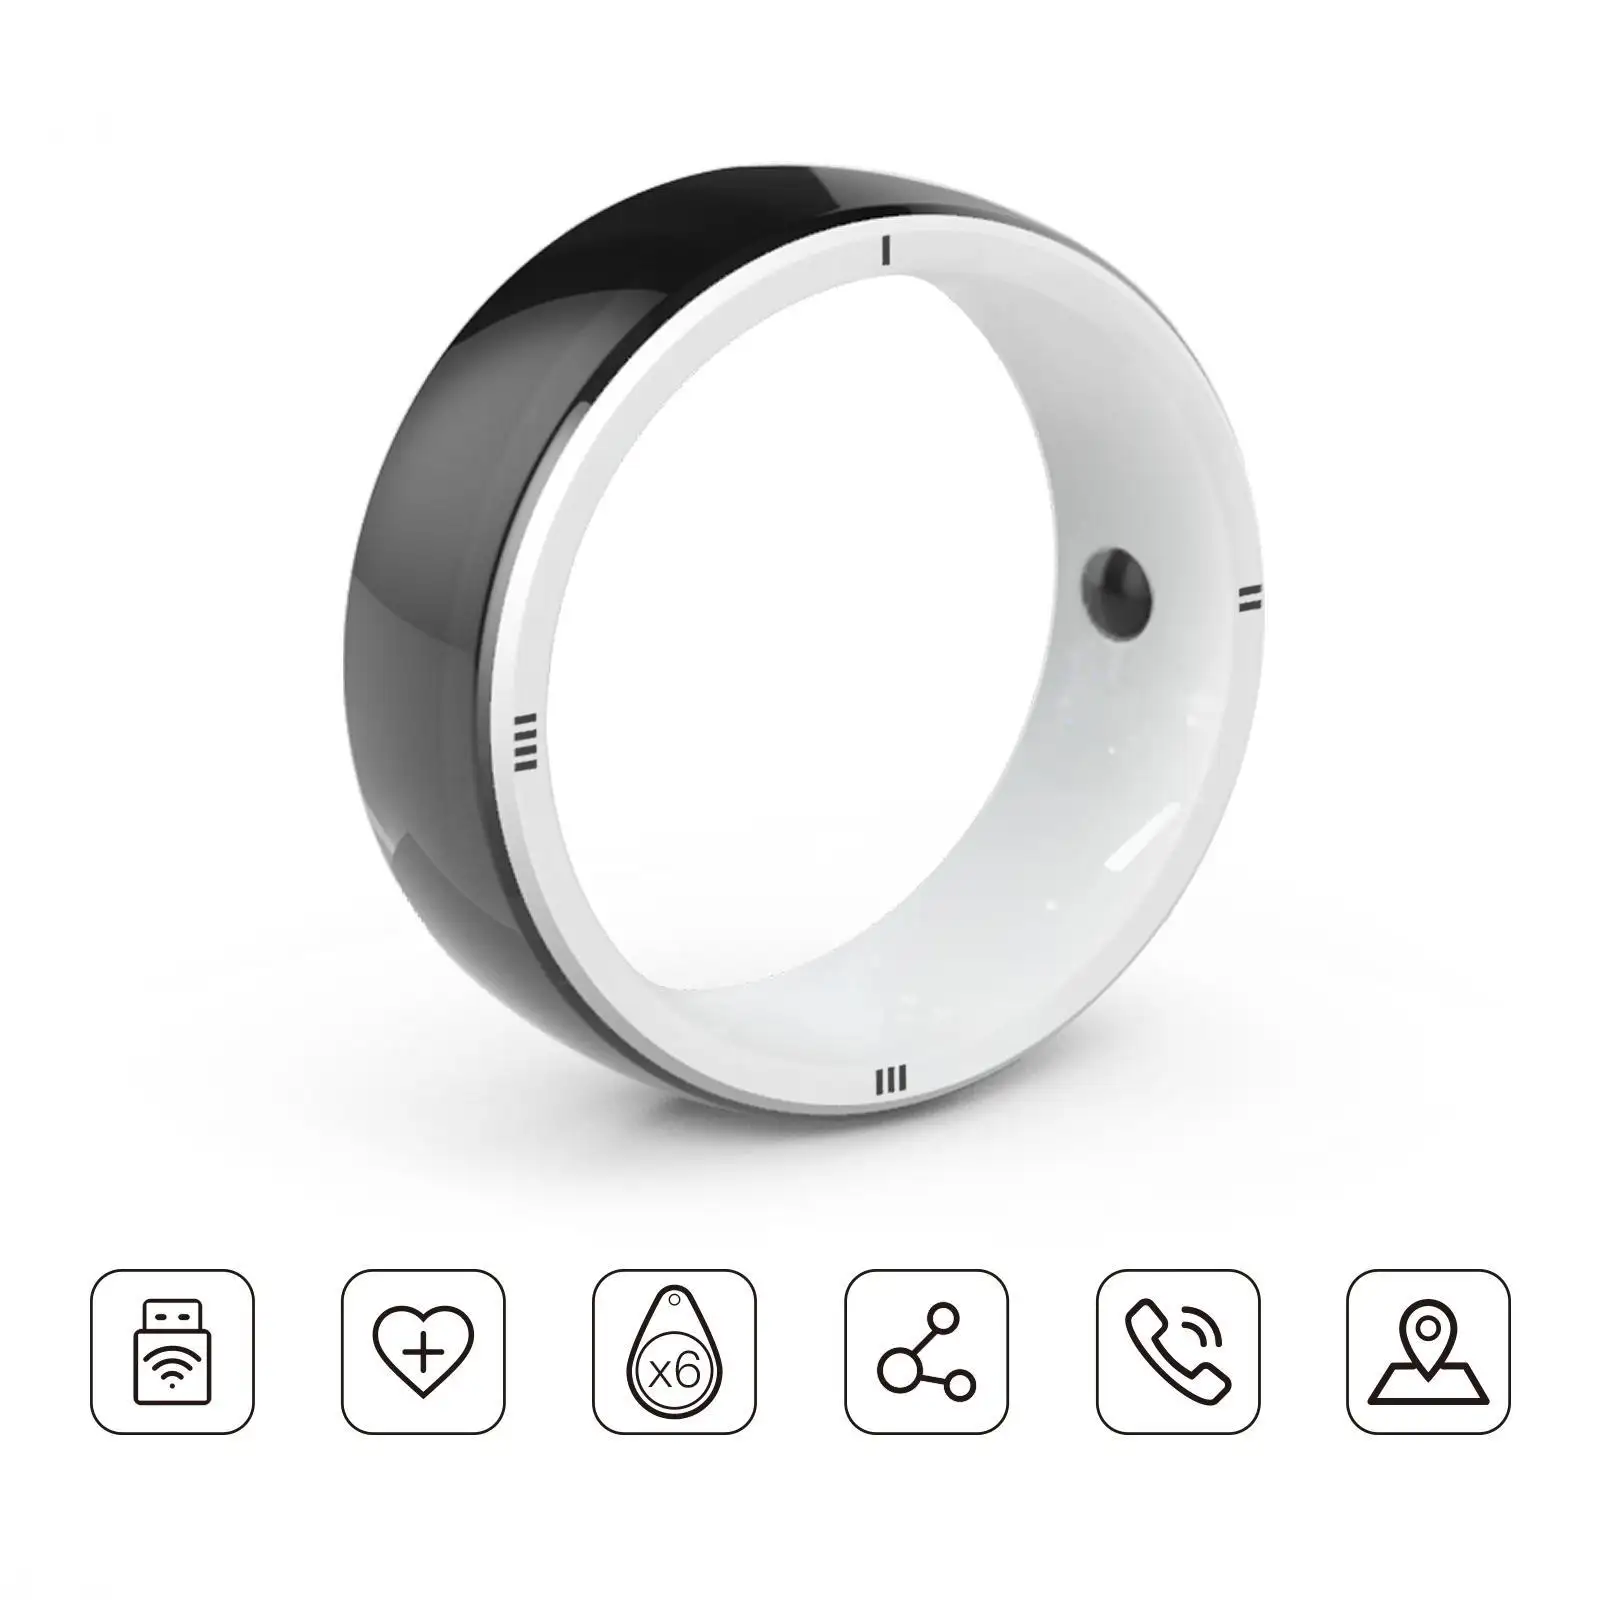 Anello intelligente JAKCOM R5 nuovo anello intelligente bello che creativo suono blaster audigy fx scheda audio sb1570 1 watt wireless auto giroscopio